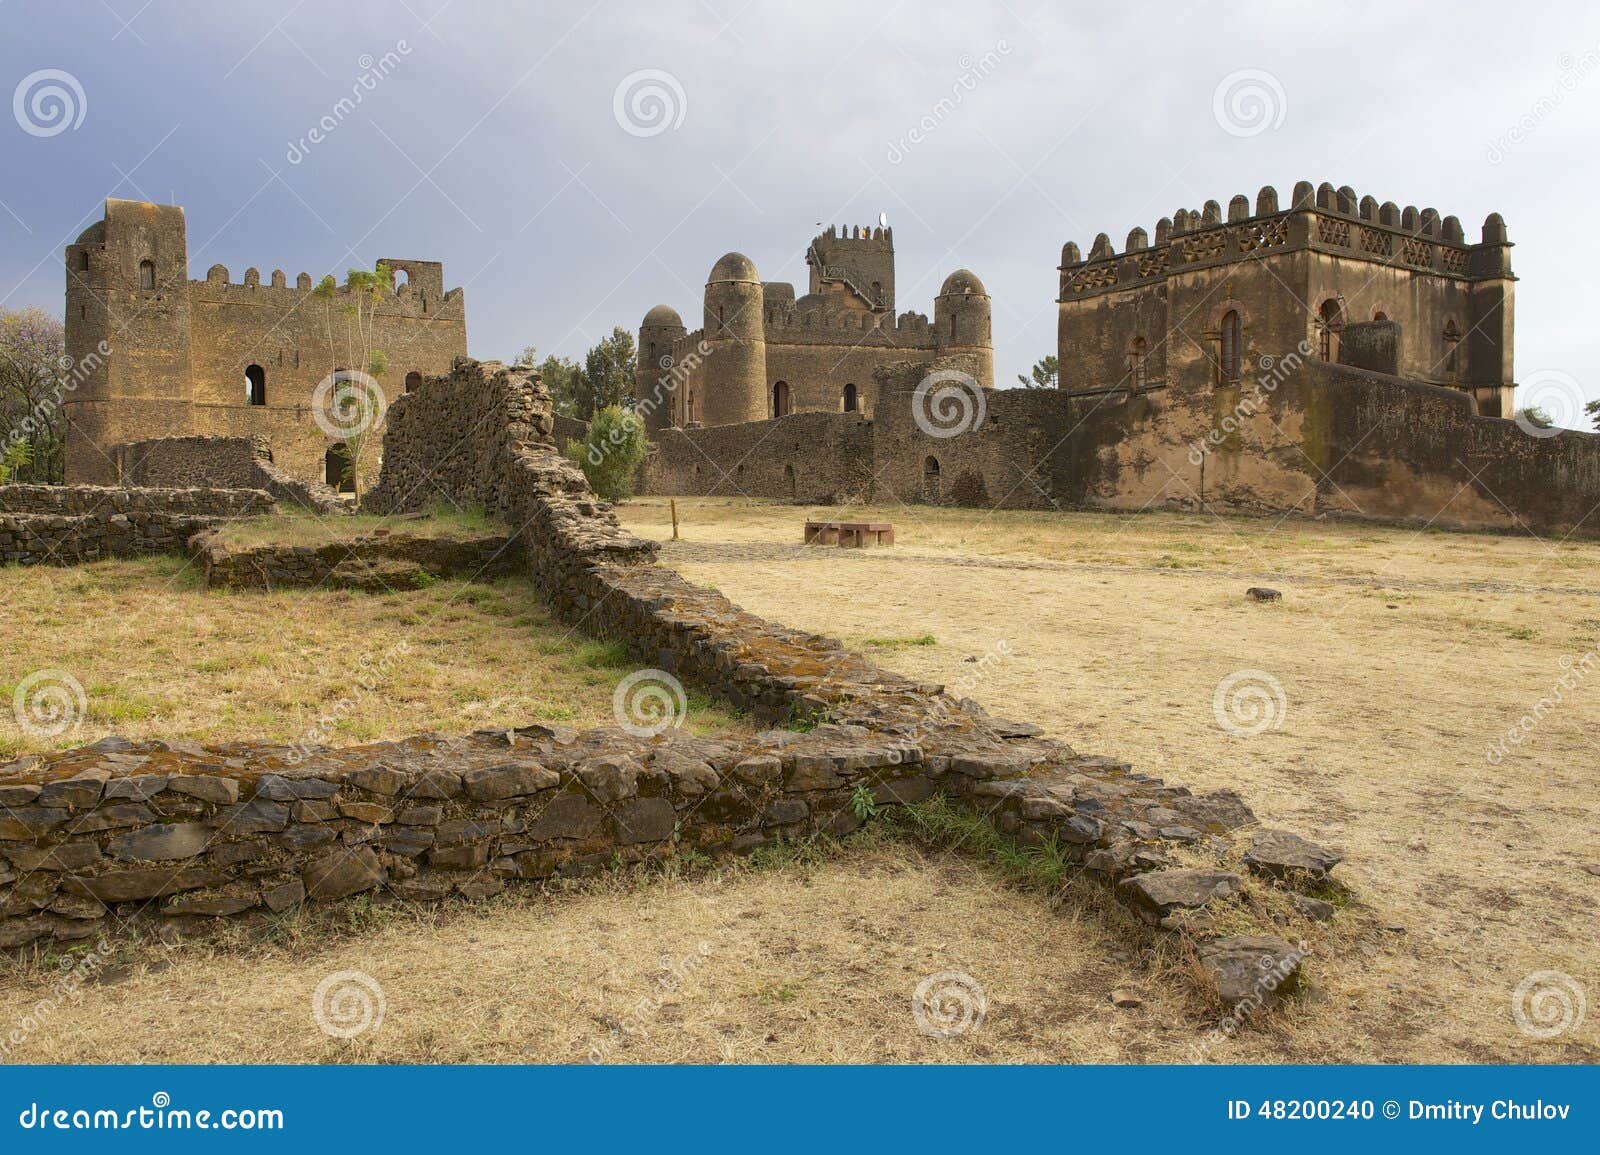 Fortaleza medieval en Gondar, Etiopía, sitio del patrimonio mundial de la UNESCO